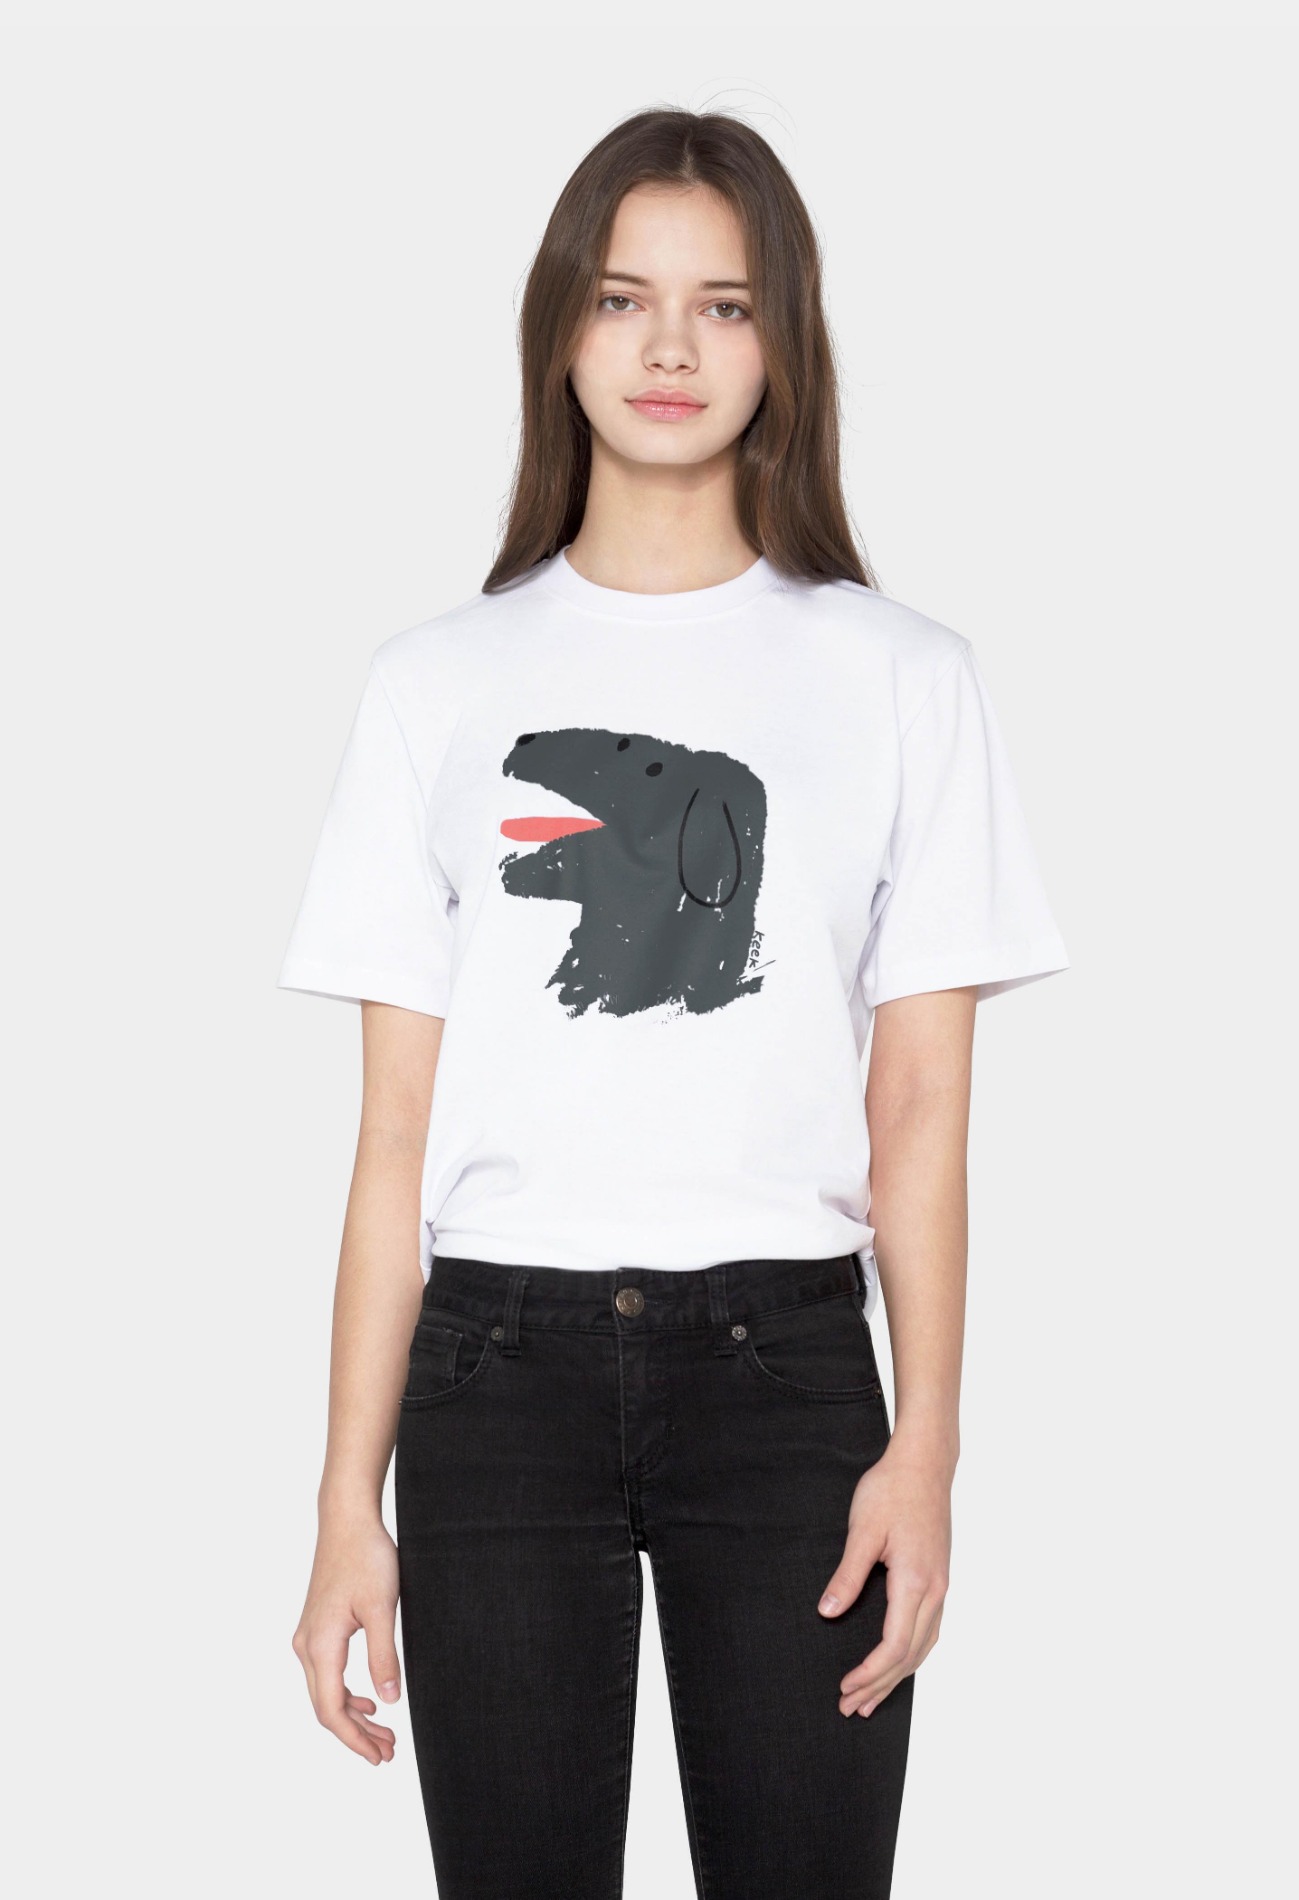 keek [Unisex] Doggy T-shirts - White 스트릿패션 유니섹스브랜드 커플시밀러룩 남자쇼핑몰 여성의류쇼핑몰 후드티 힙색